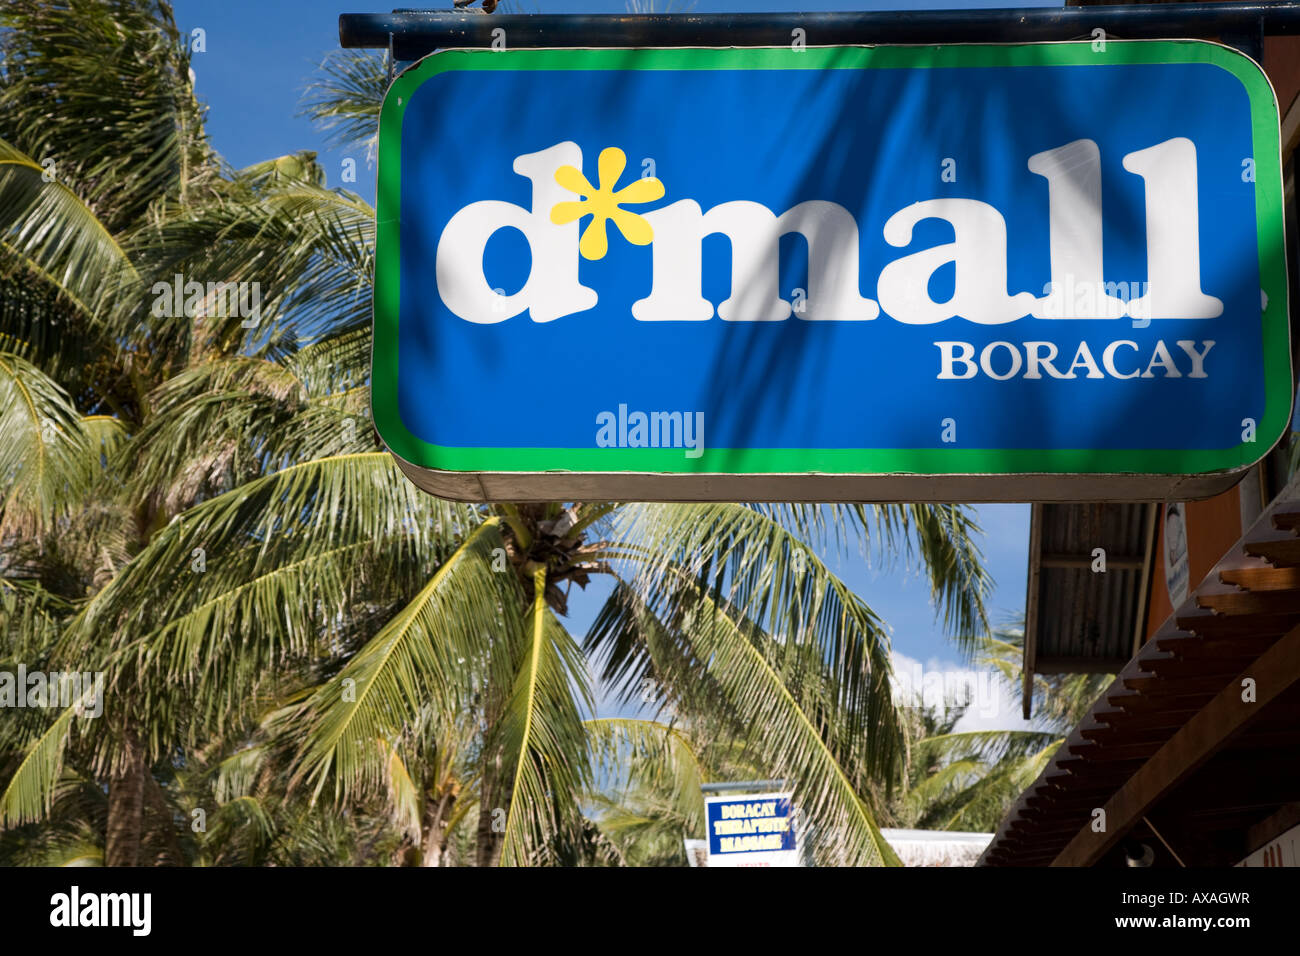 d*mall Boracay Sign Stock Photo